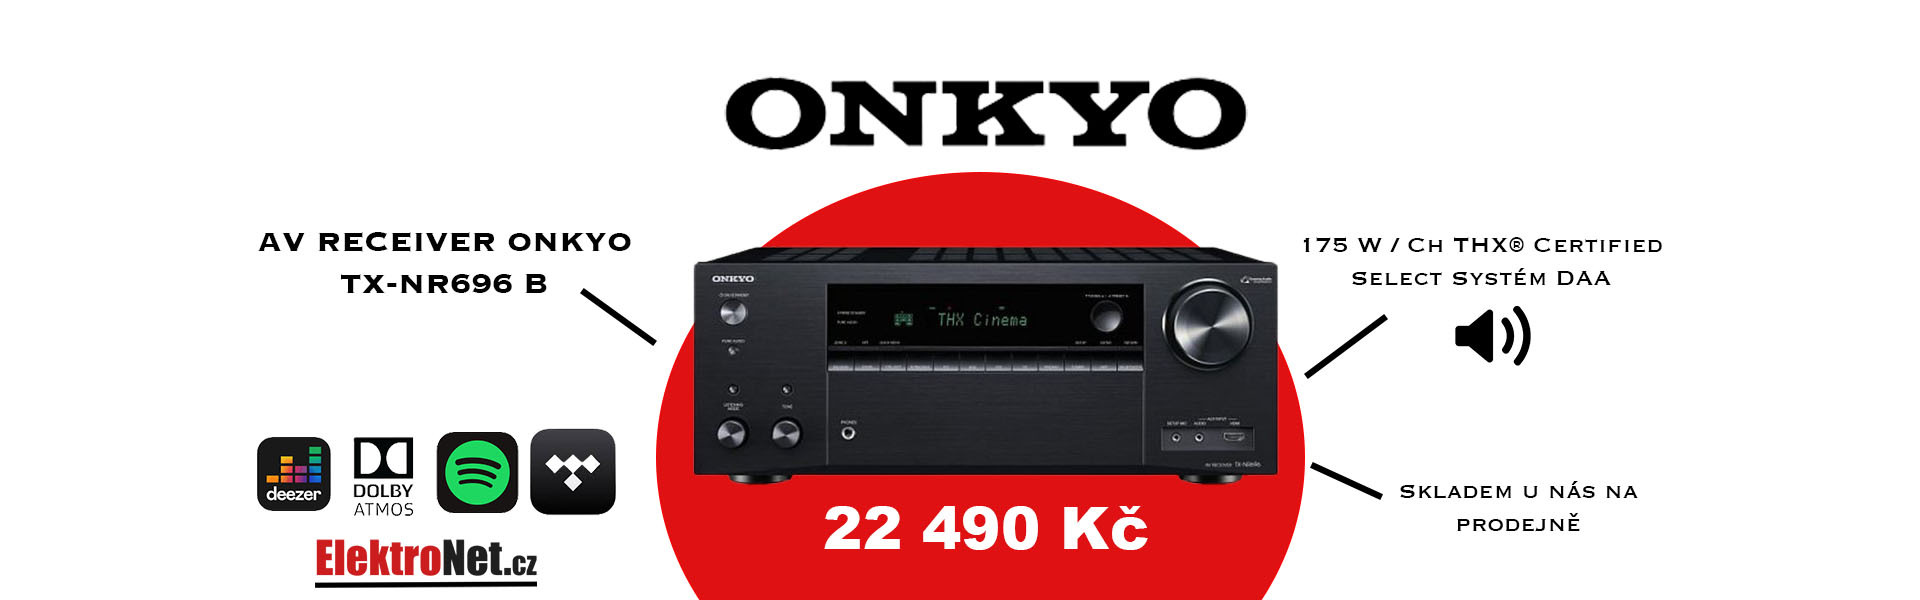 onkyo-tx-696-og1.jpg